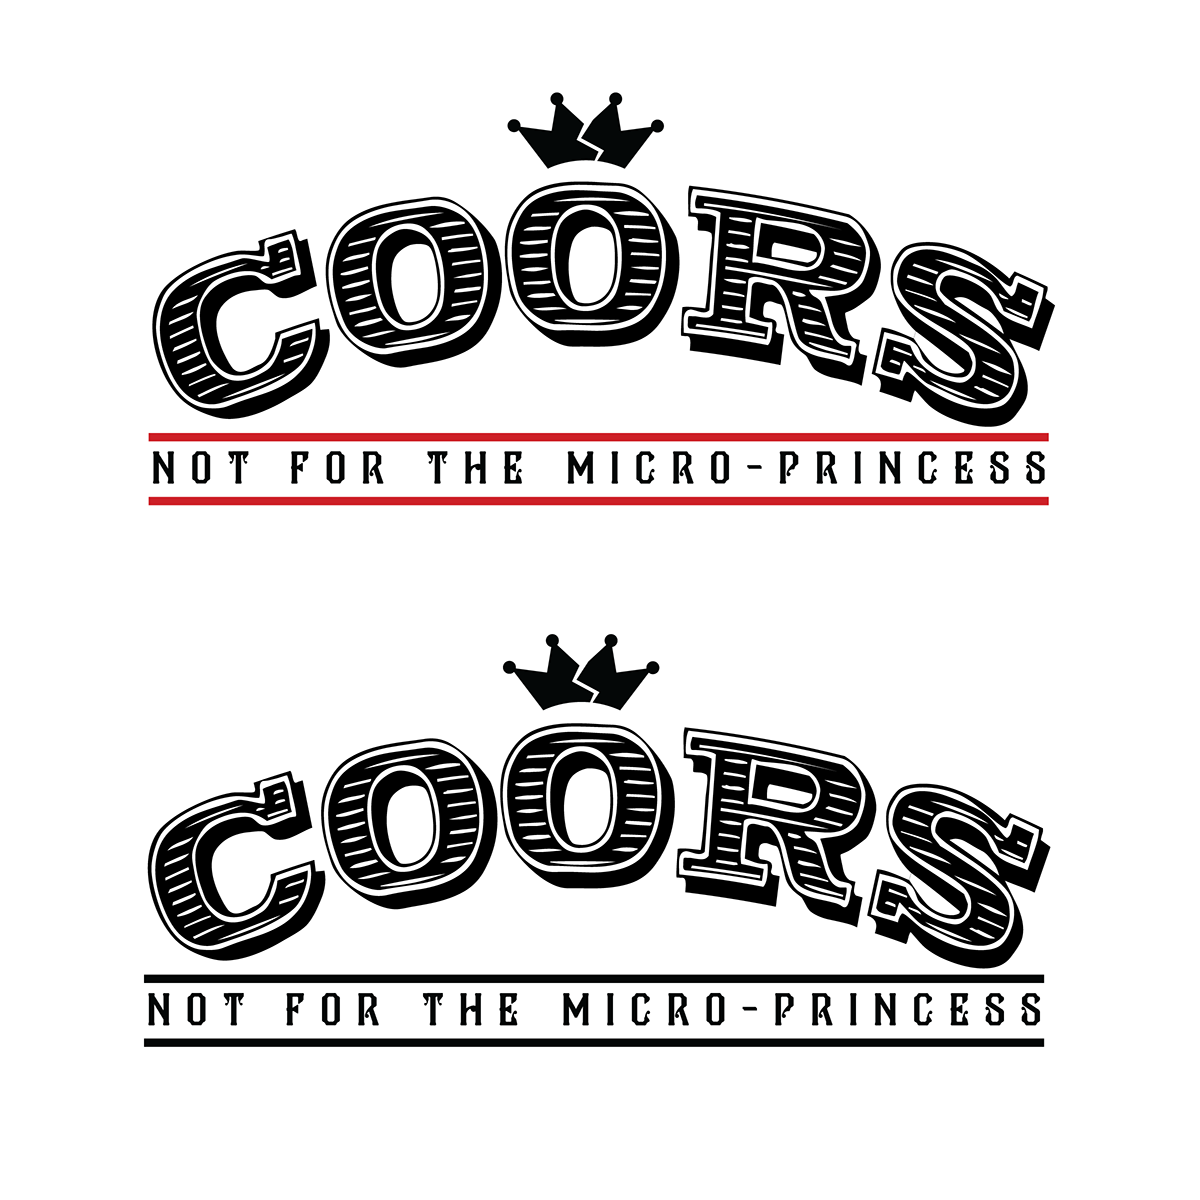 beer bottle box package carrier Practice coors micro rebranding Rebrand logo logo lockup